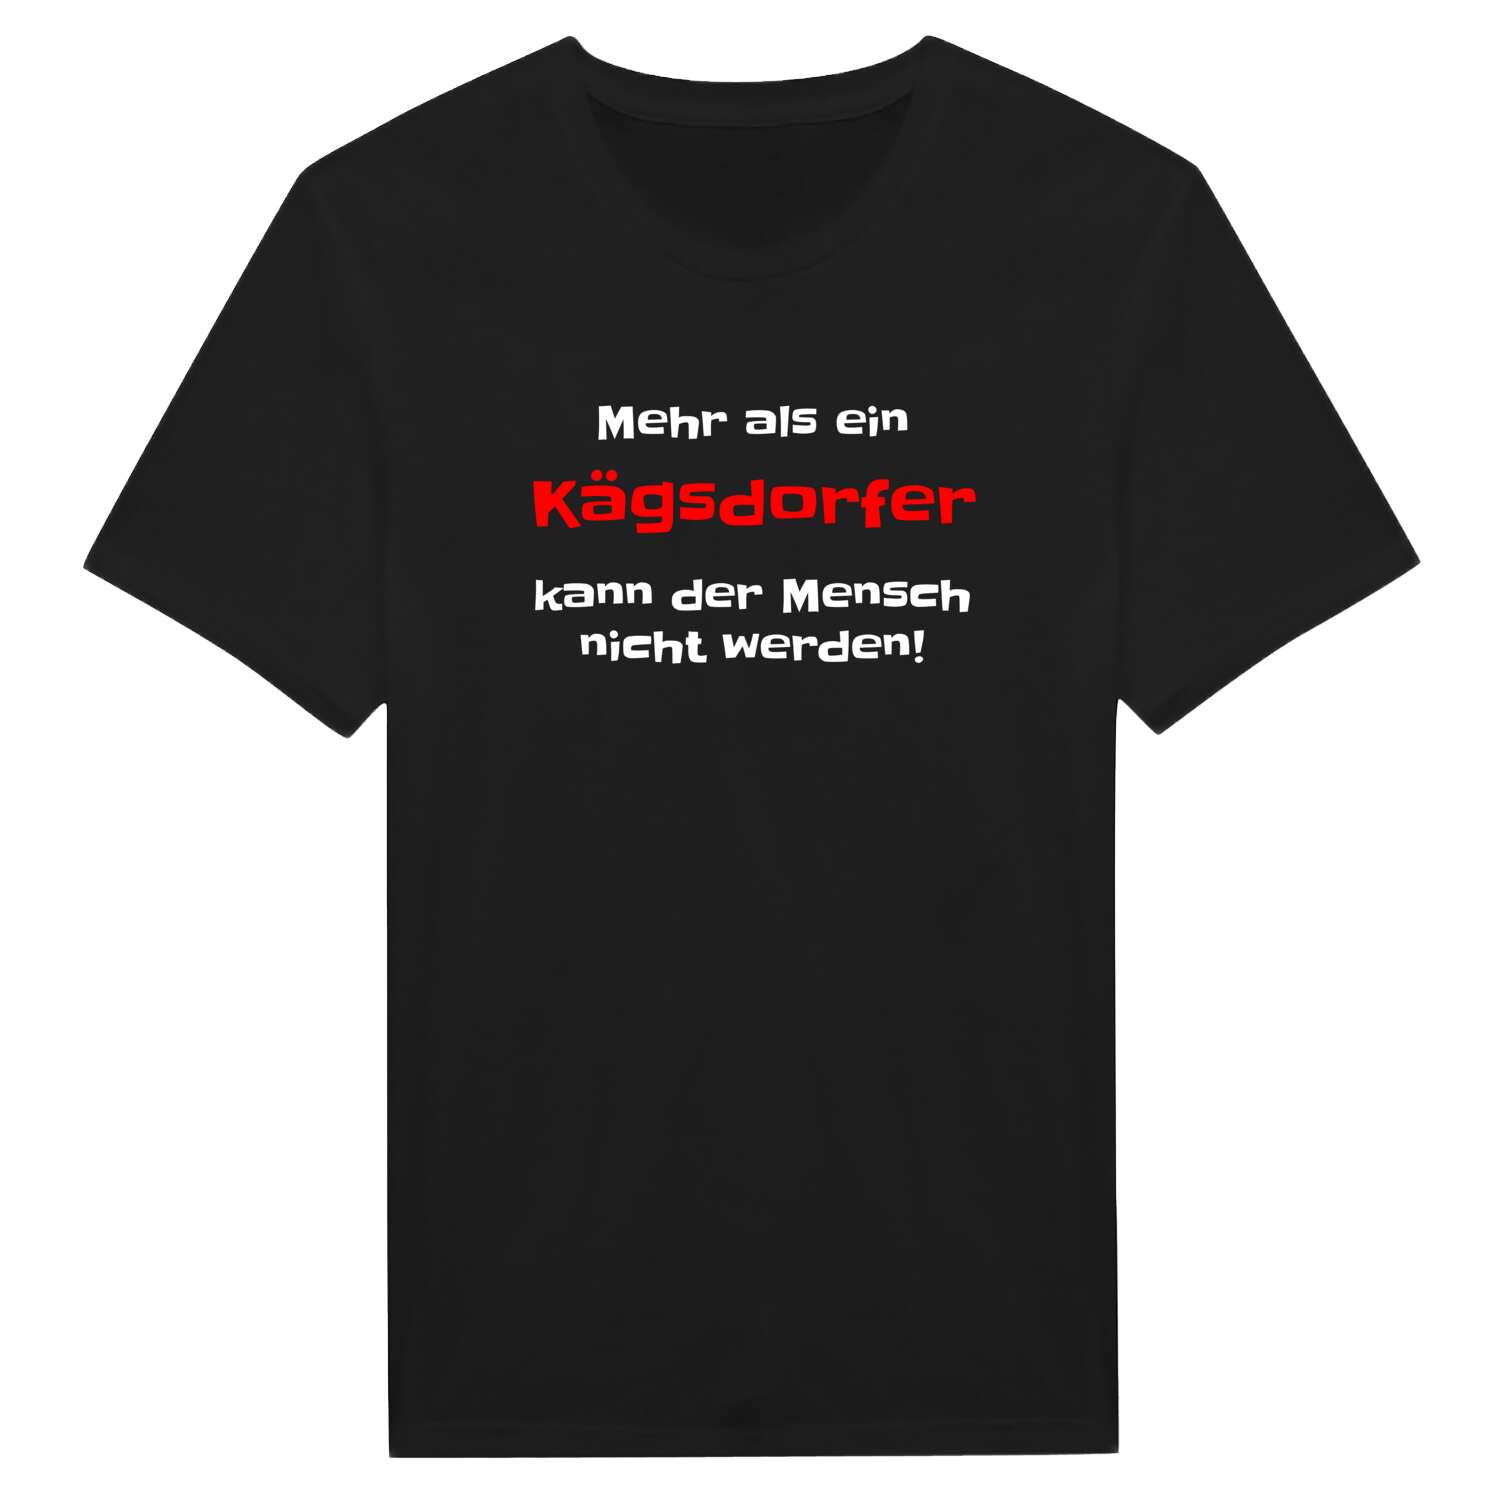 Kägsdorf T-Shirt »Mehr als ein«